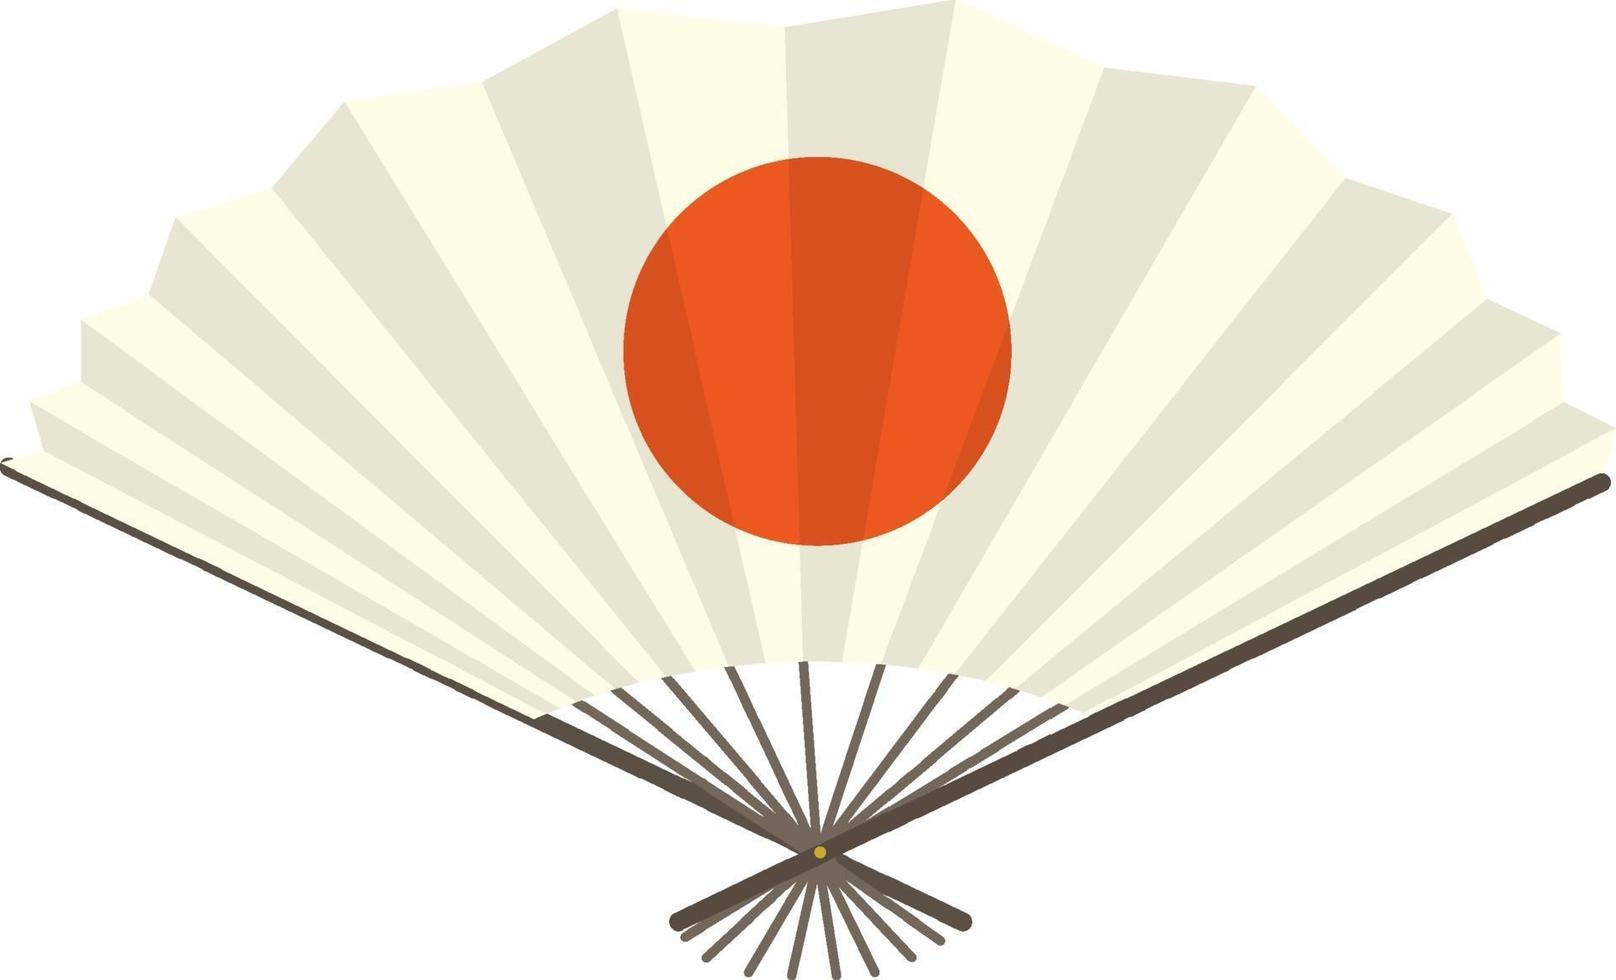 japansk vikfläkt eller handfläkt med den röda solen tryckt vektor